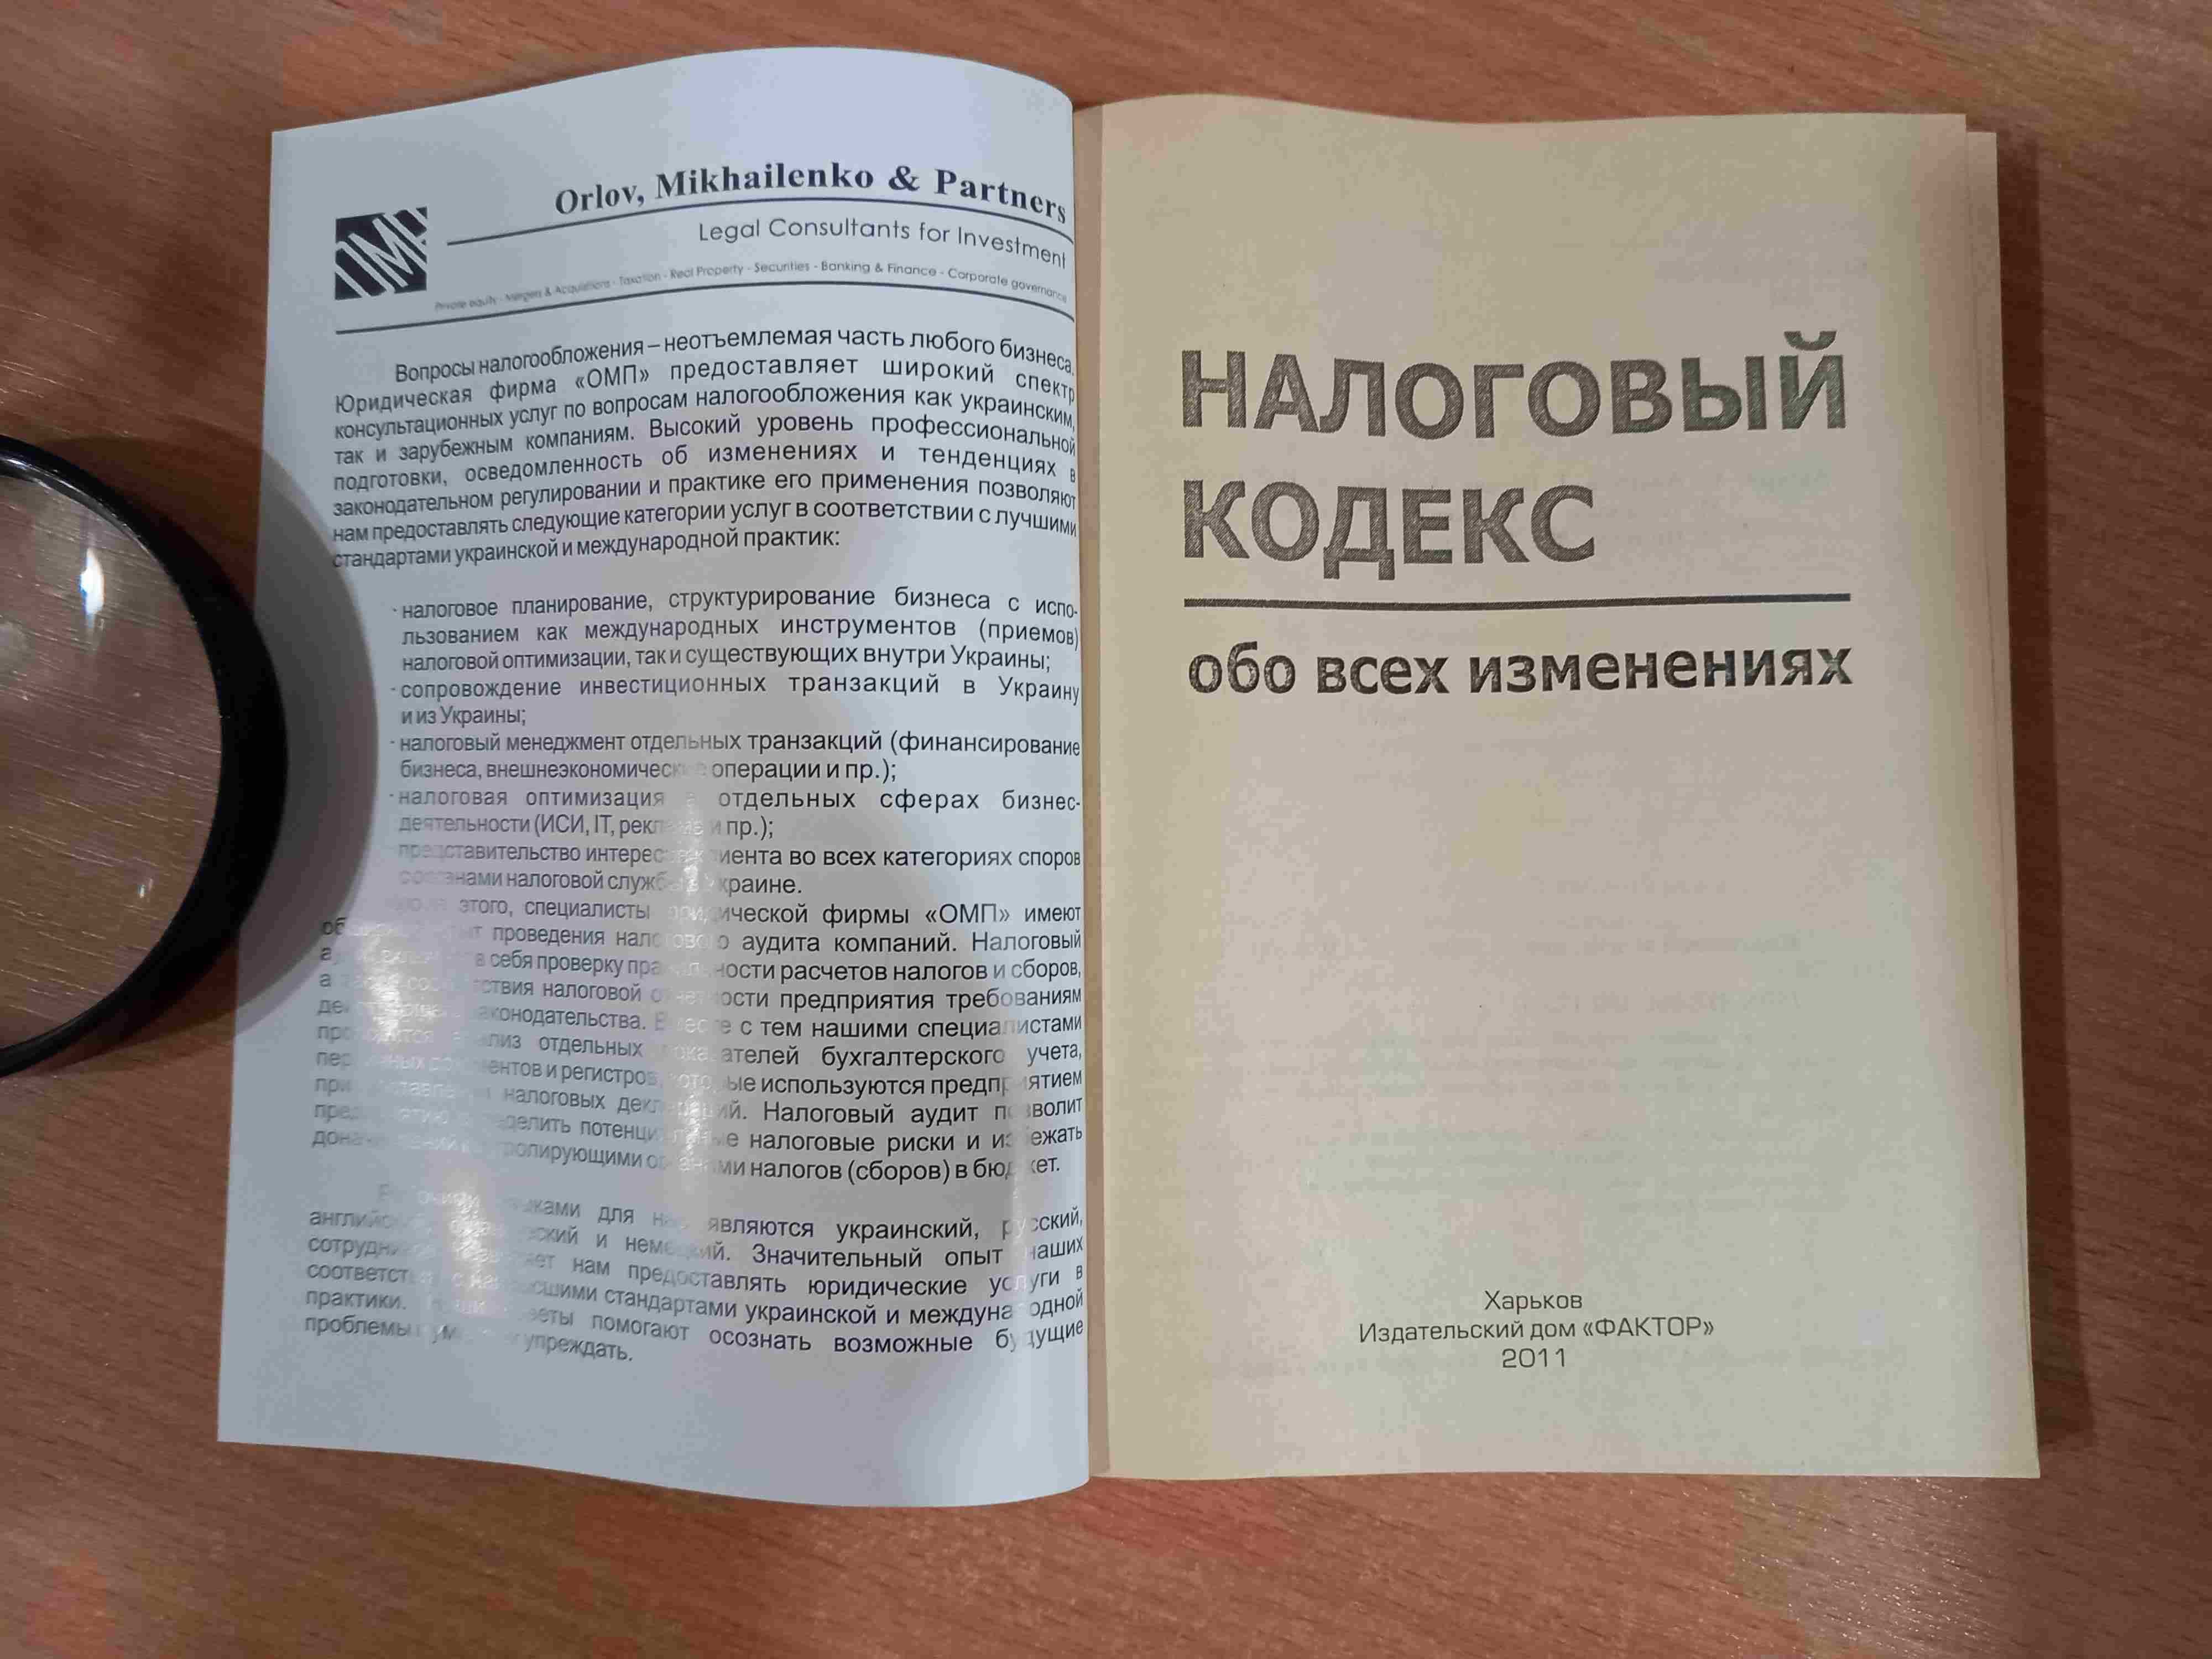 Налоговый кодекс•обо всех изменениях •О.Андрусь •Харьков •Фактор •2011